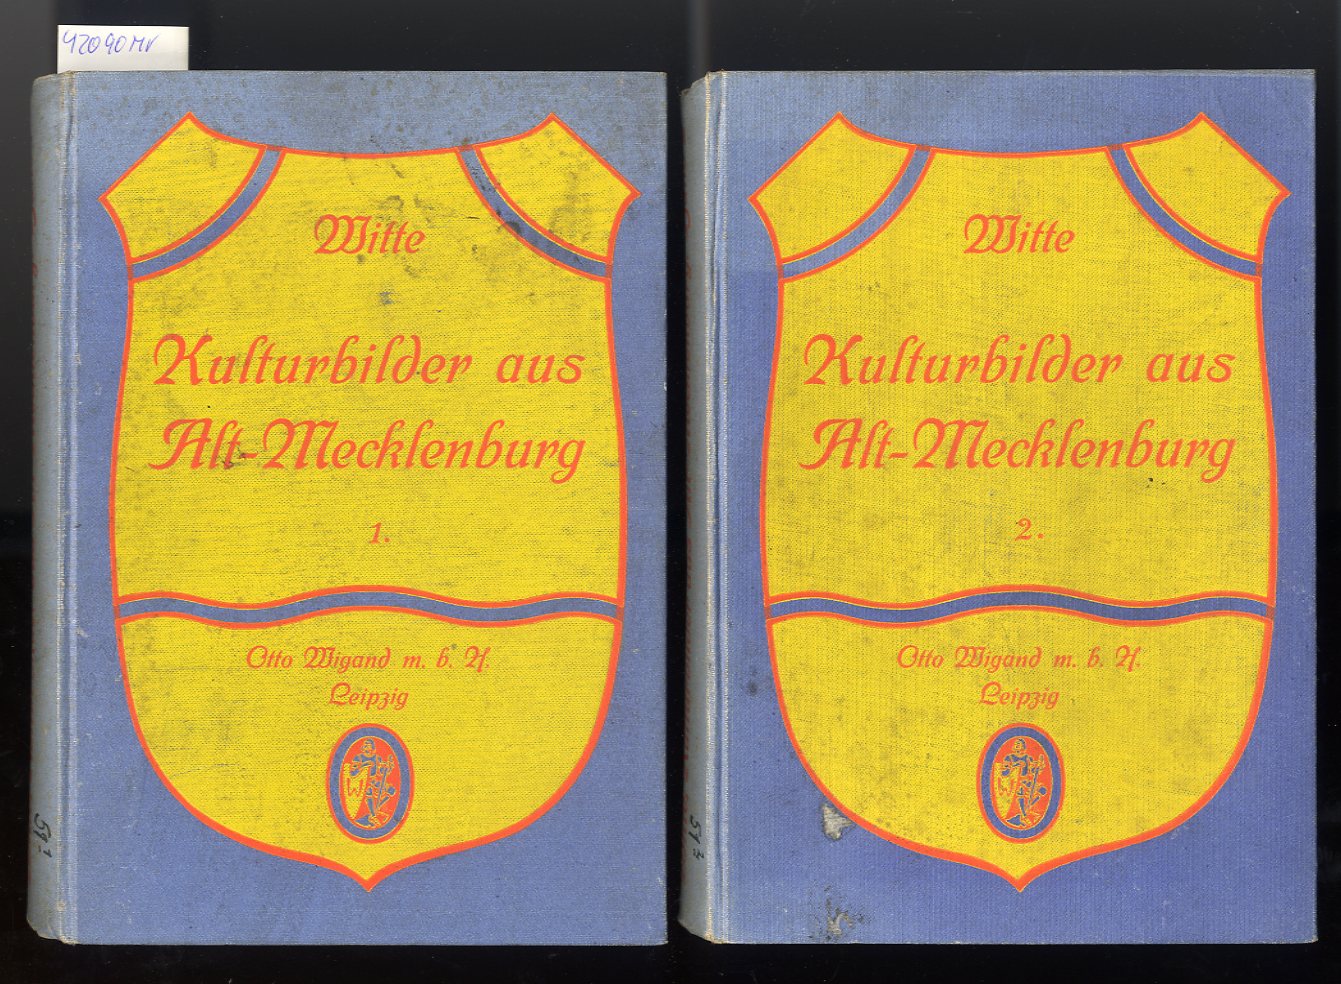 Witte, Hans:  Kulturbilder aus Alt-Mecklenburg. 2 Bände. 